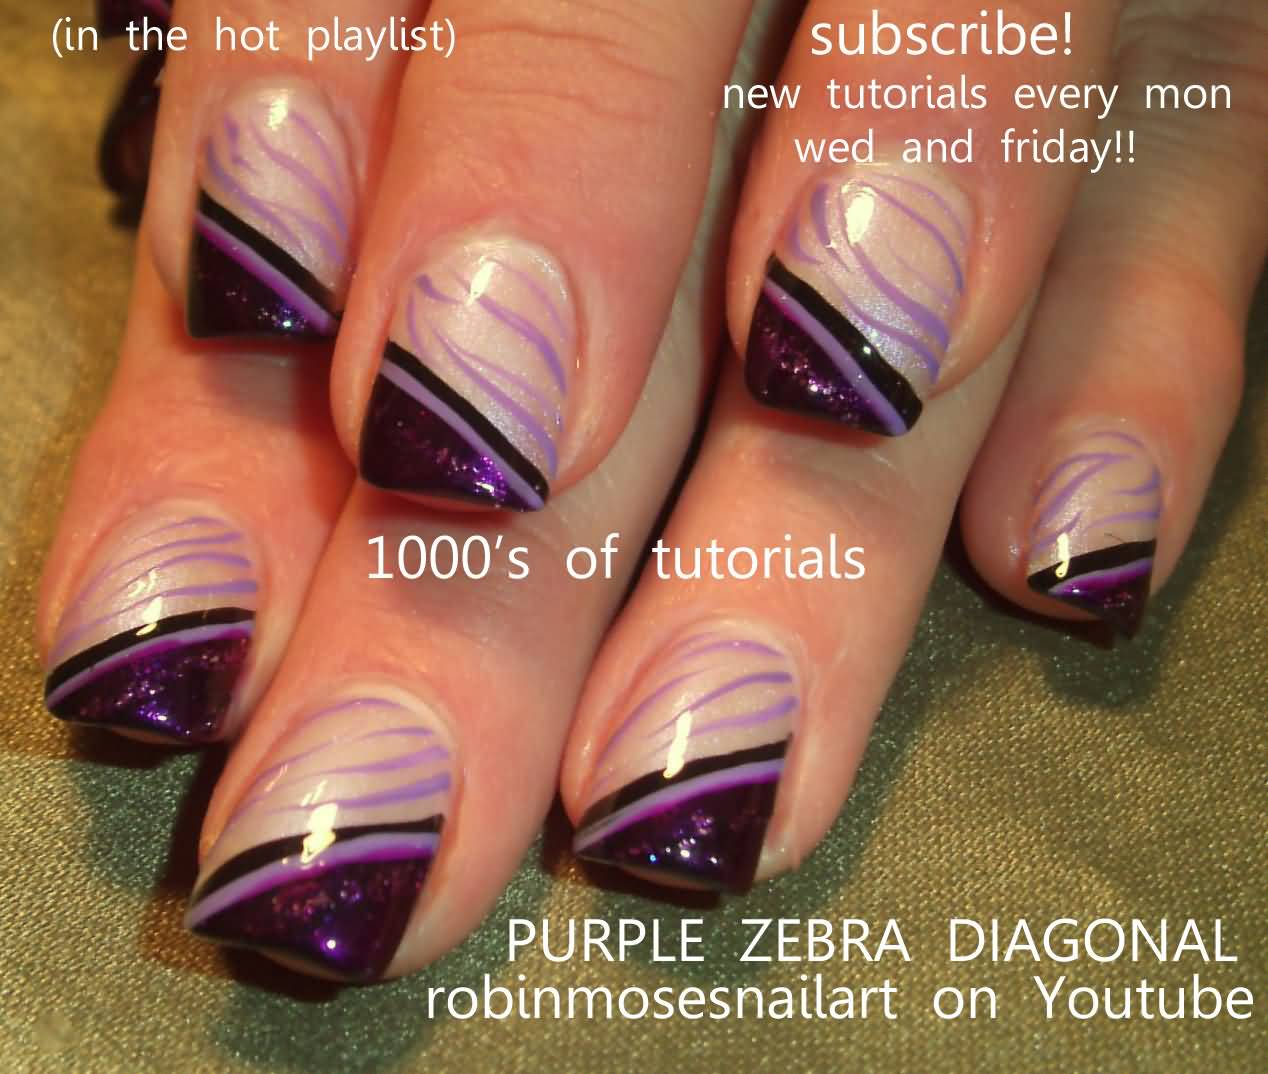 Purple Zebra Diagonal Nail Art